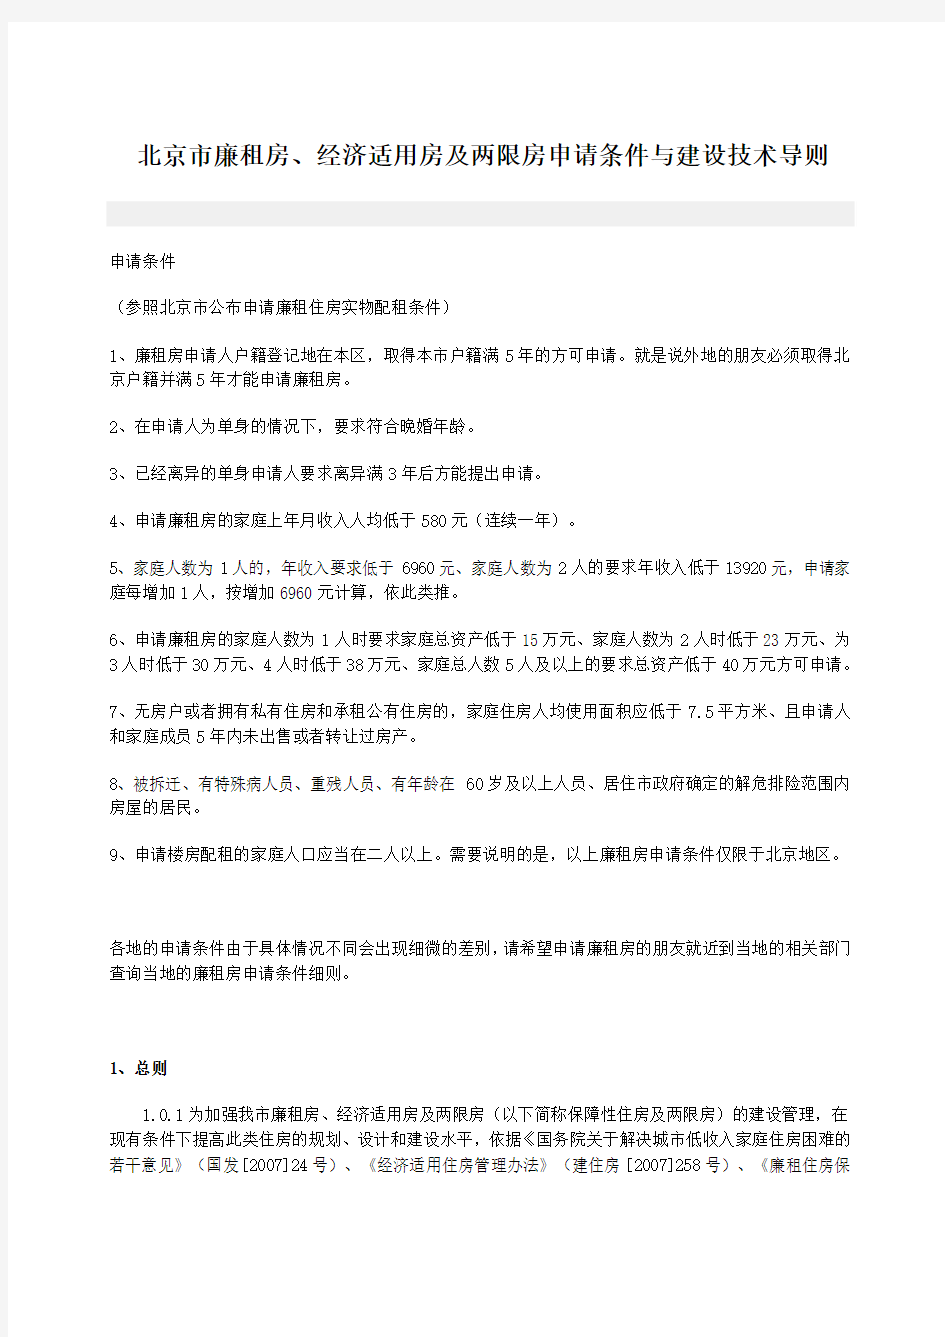 北京市廉租房、经济适用房及两限房申请条件与建设技术导则